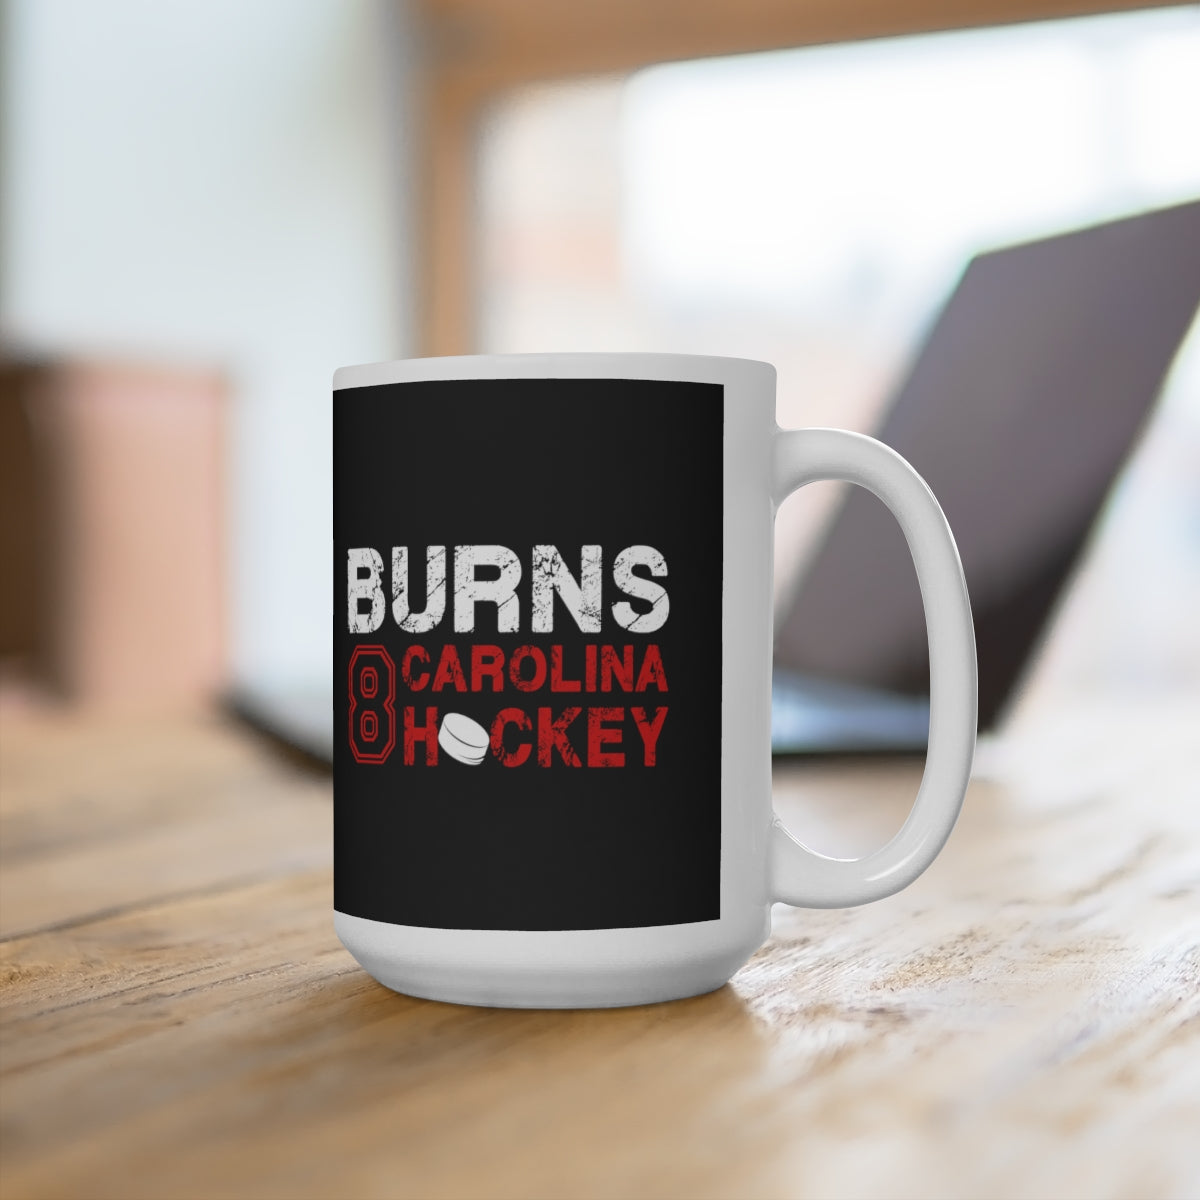 Burns 8 Carolina Hockey Ceramic Coffee Mug In Black, 15oz